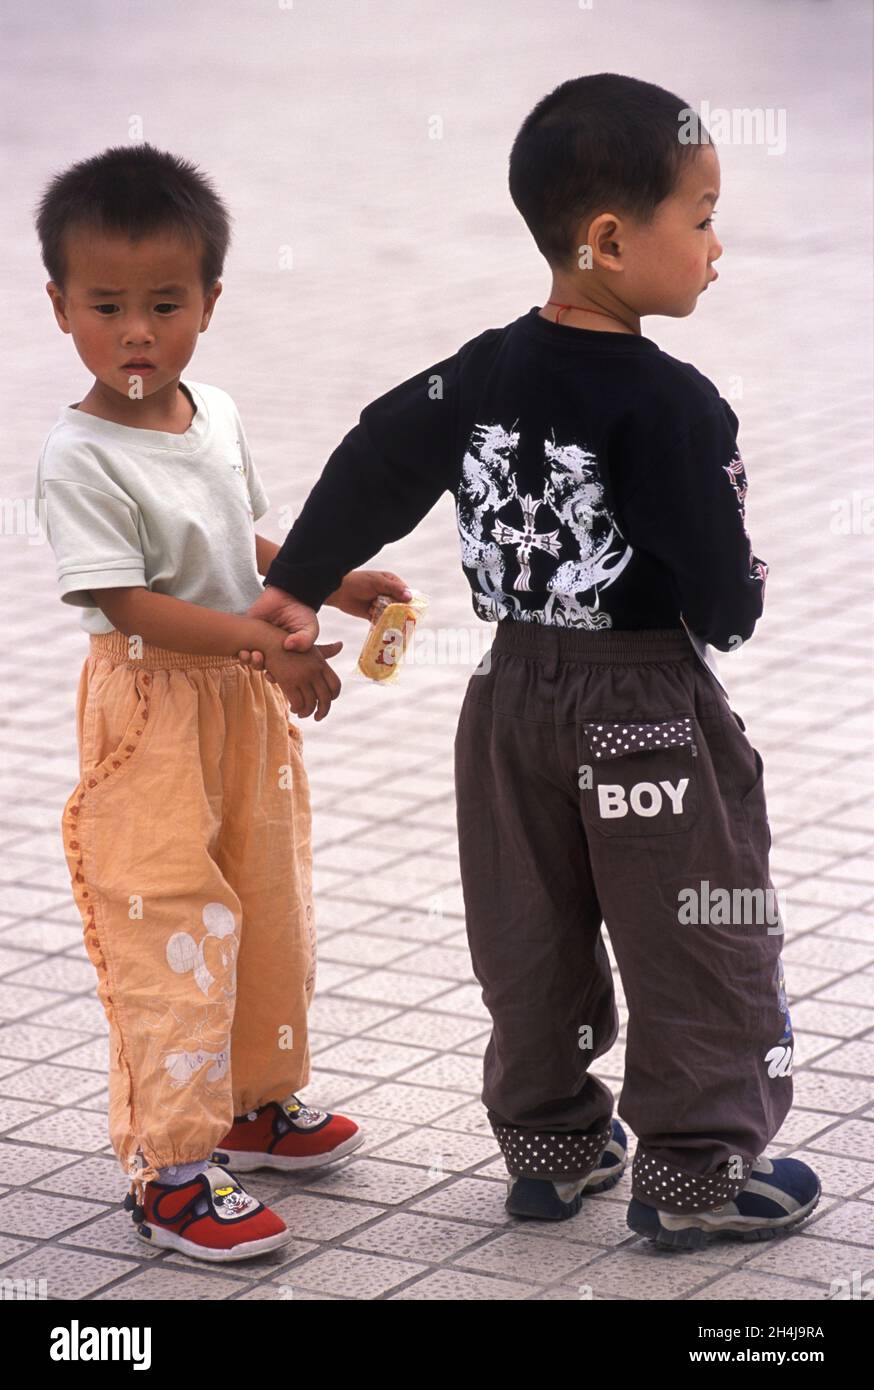 China 2000er Jahre. Zwei junge chinesische Jungen tragen Designer-Label-Kleidung im westlichen Stil. Auf der Hose einer von ihnen ist das Logo „Boy“ zu sehen. Hangzhou, Provinz Zhejiang, China. 2000er, 2001 HOMER SYKES. Stockfoto